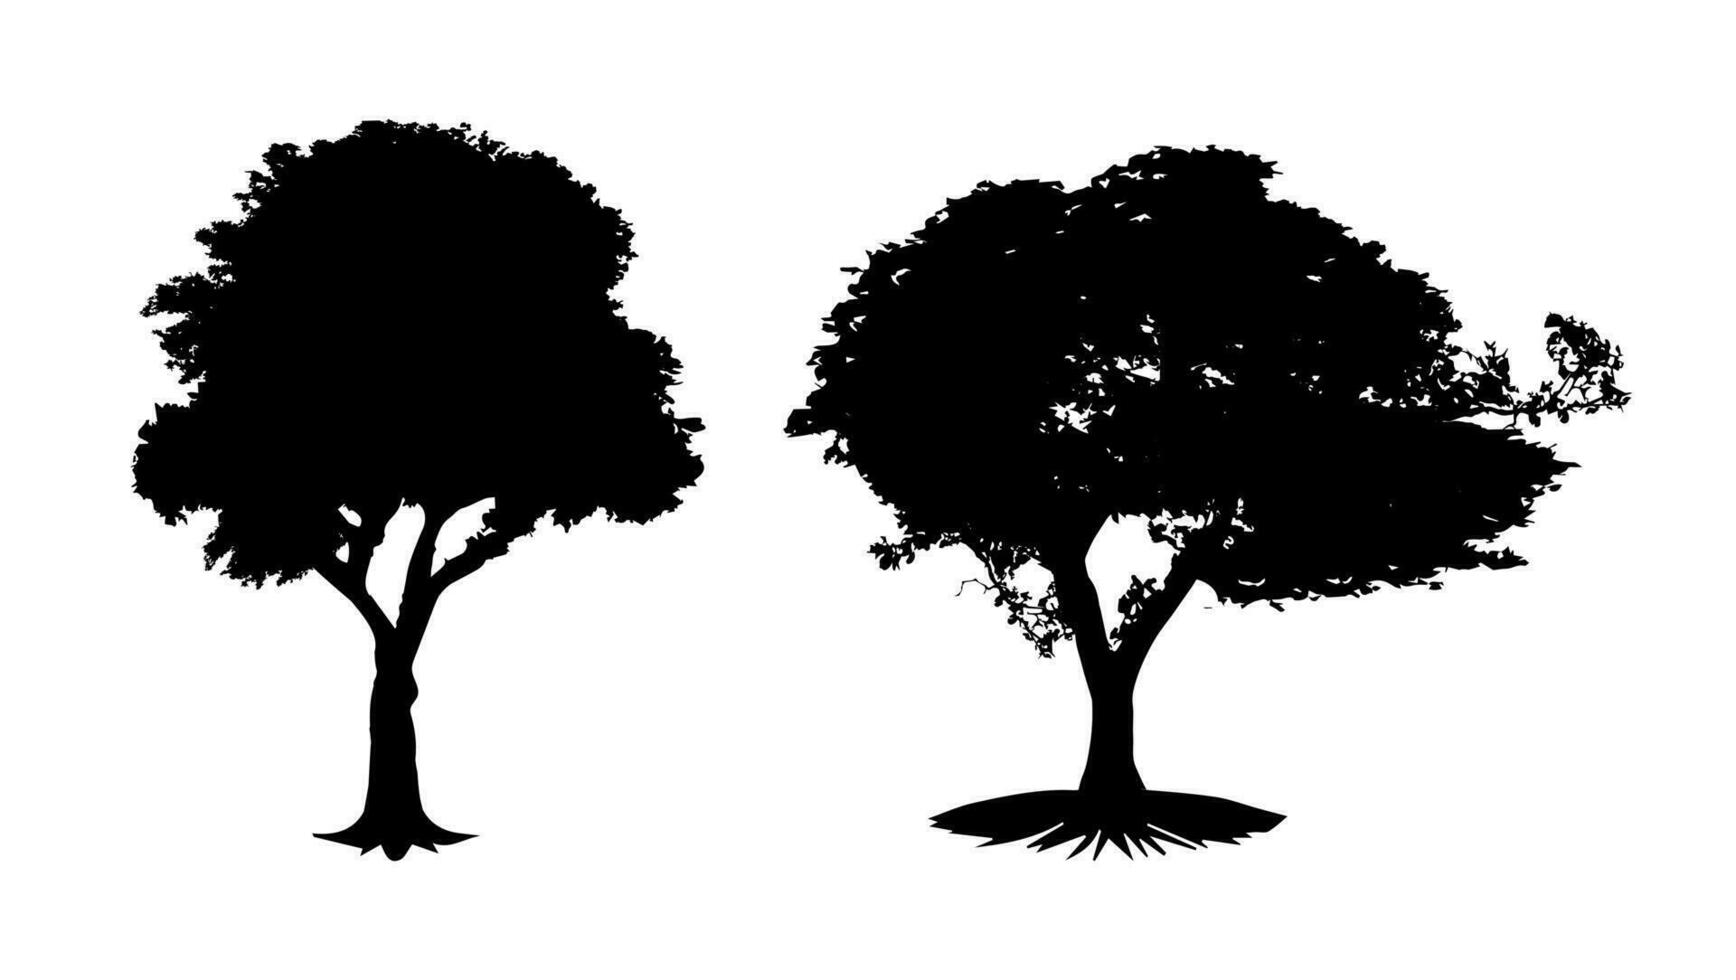 vetor de silhueta de árvore. o logotipo, os ícones e os gráficos das árvores vintage são isolados no fundo branco.